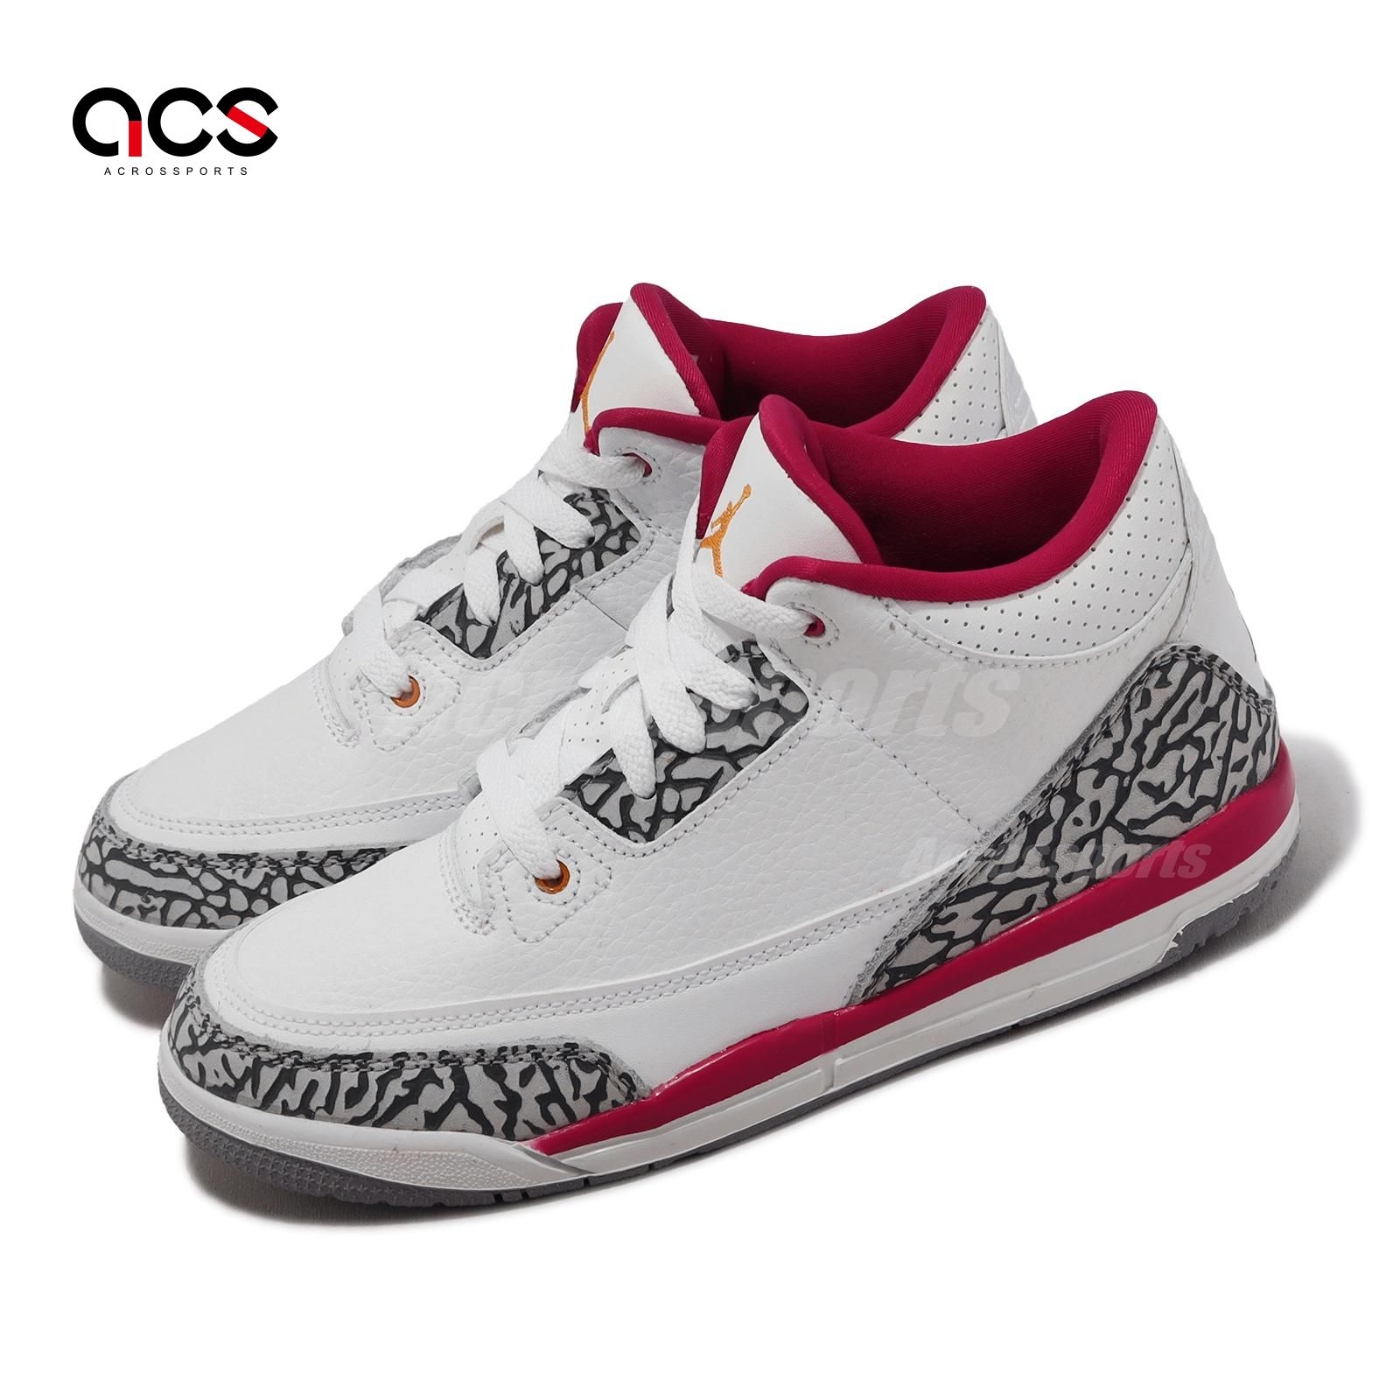 Nike 童鞋Air Jordan 3 Retro PS 中童小朋友3代親子鞋喬丹白紅爆裂紋